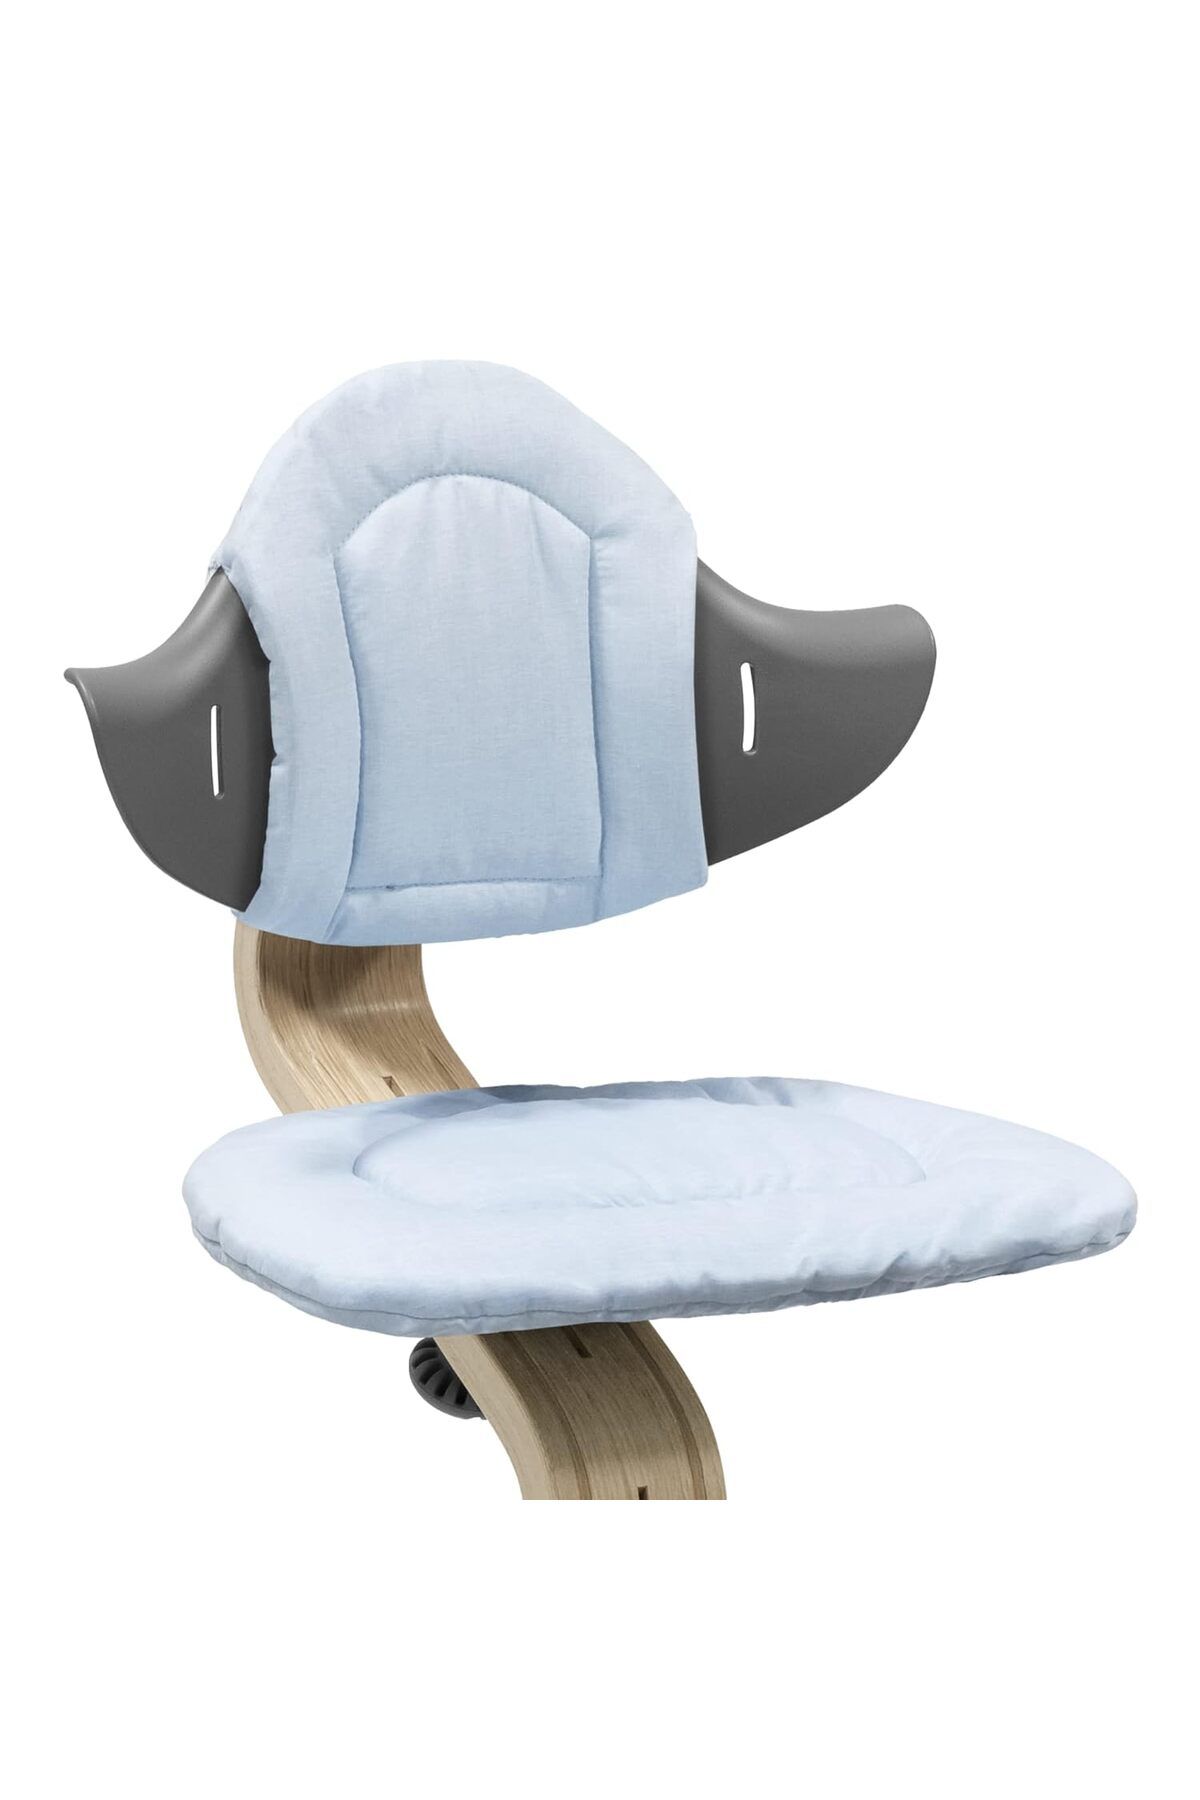 Stokke Nomi sandalye ve mama sandalyesi için yumuşak yastık, kolayca takılır ve çıkarılabilir +6 ay için